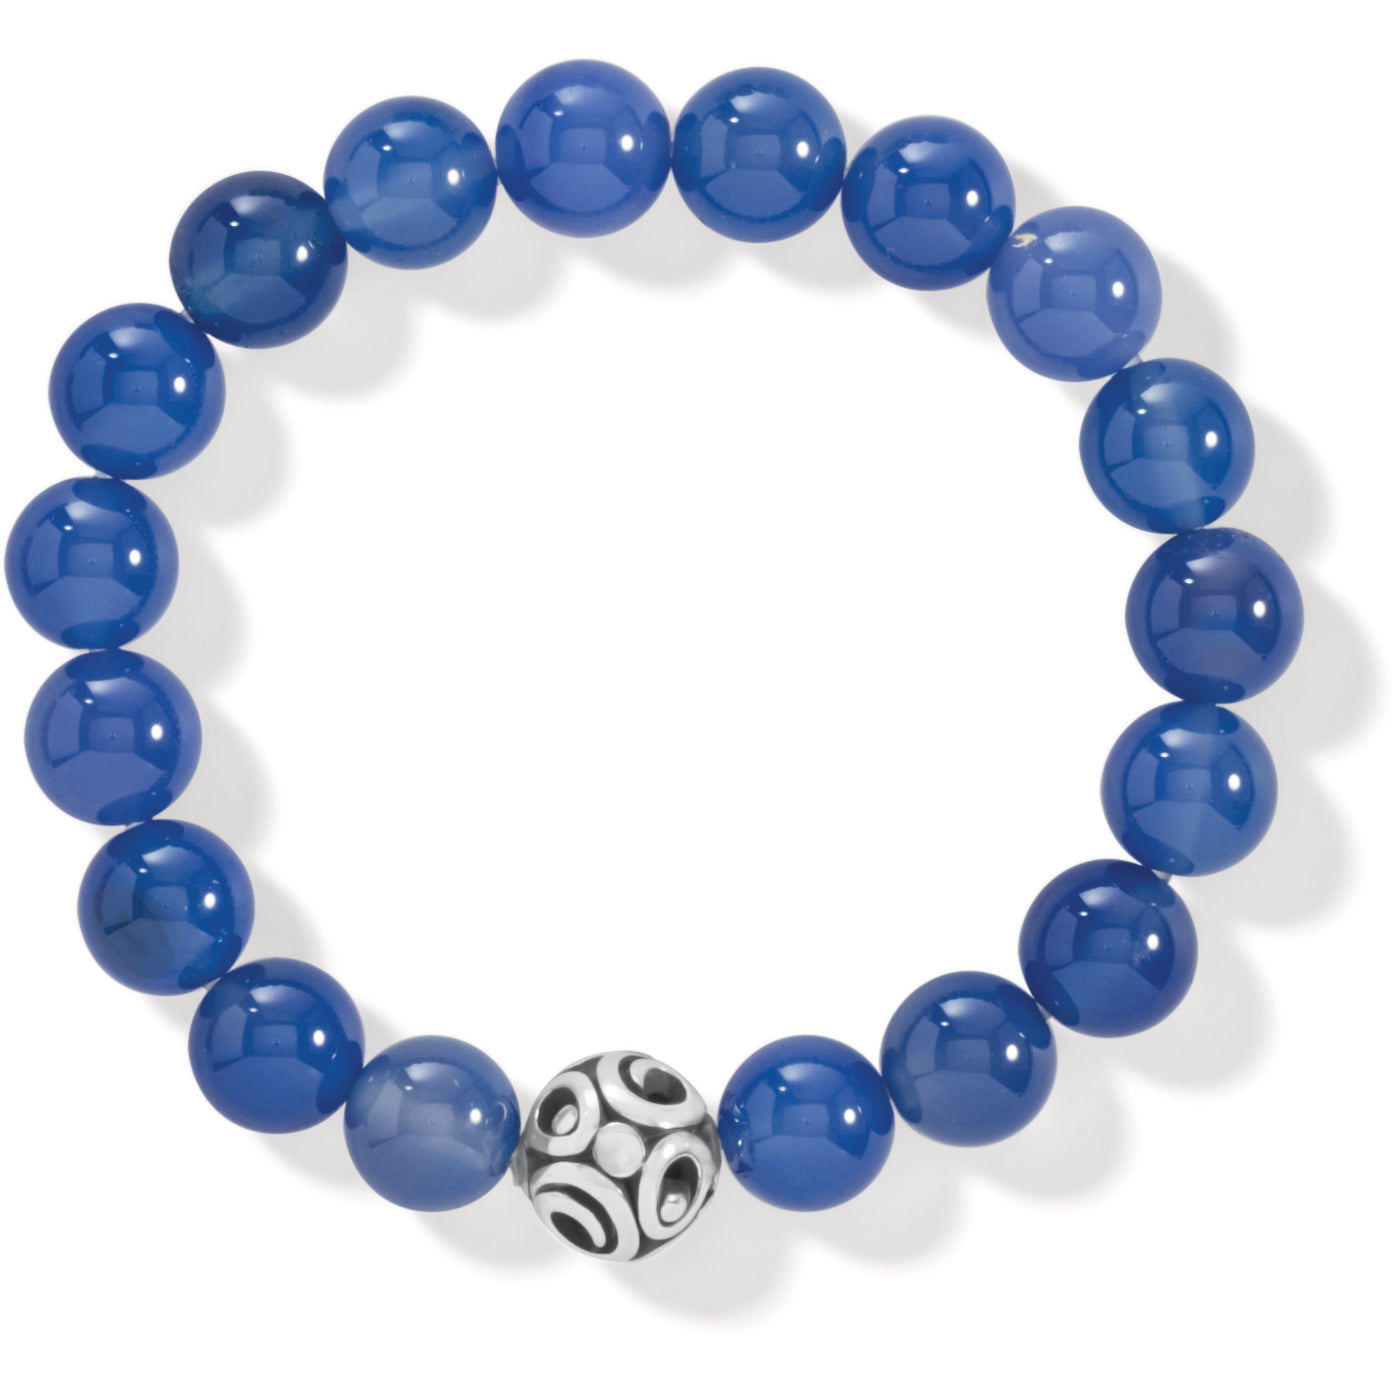 Contempo Chroma Blue Agate Stretch Bracelet